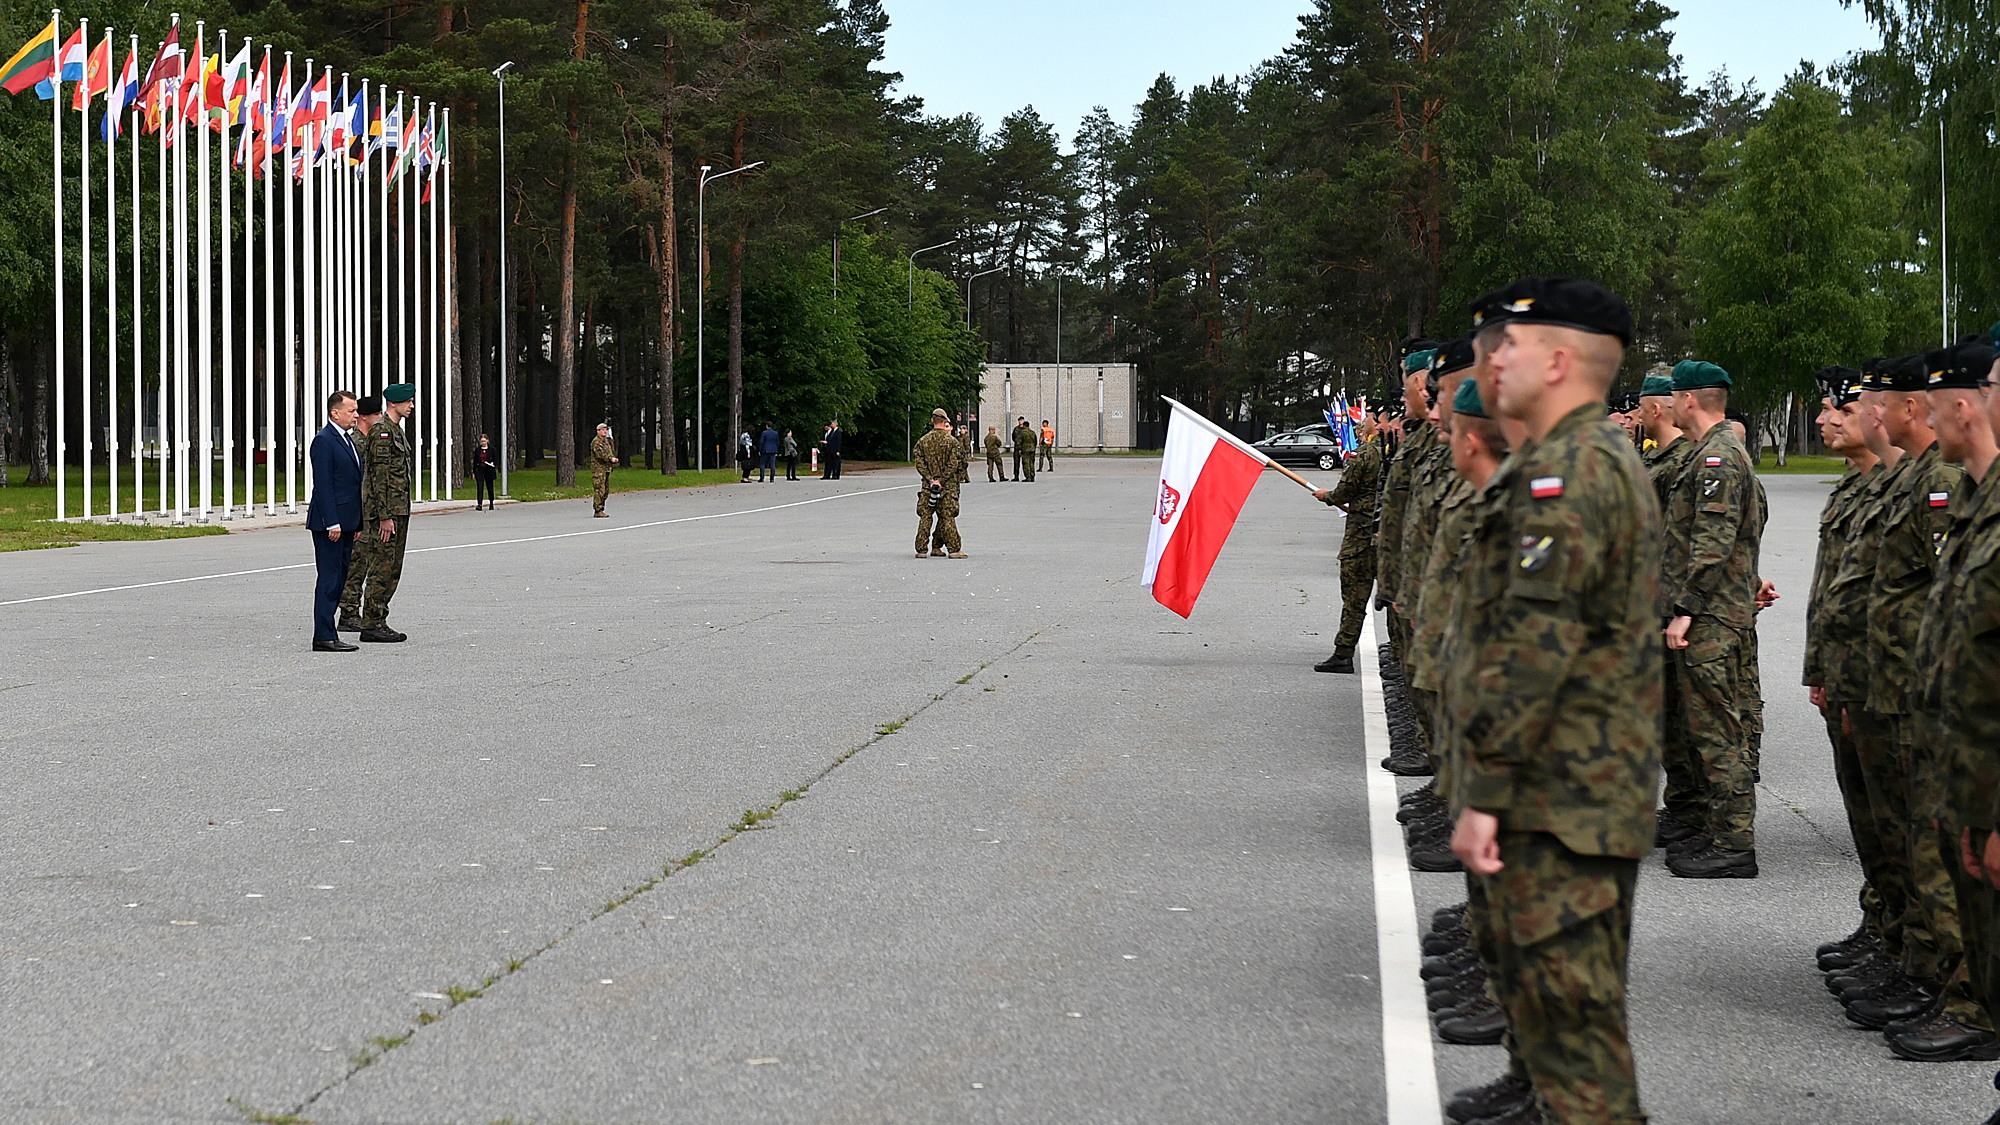 21 czerwca br., Mariusz Błaszczak, minister obrony narodowej odwiedził żołnierzy w Polskim Kontyngencie Wojskowym w bazie Ādaži na Łotwie.